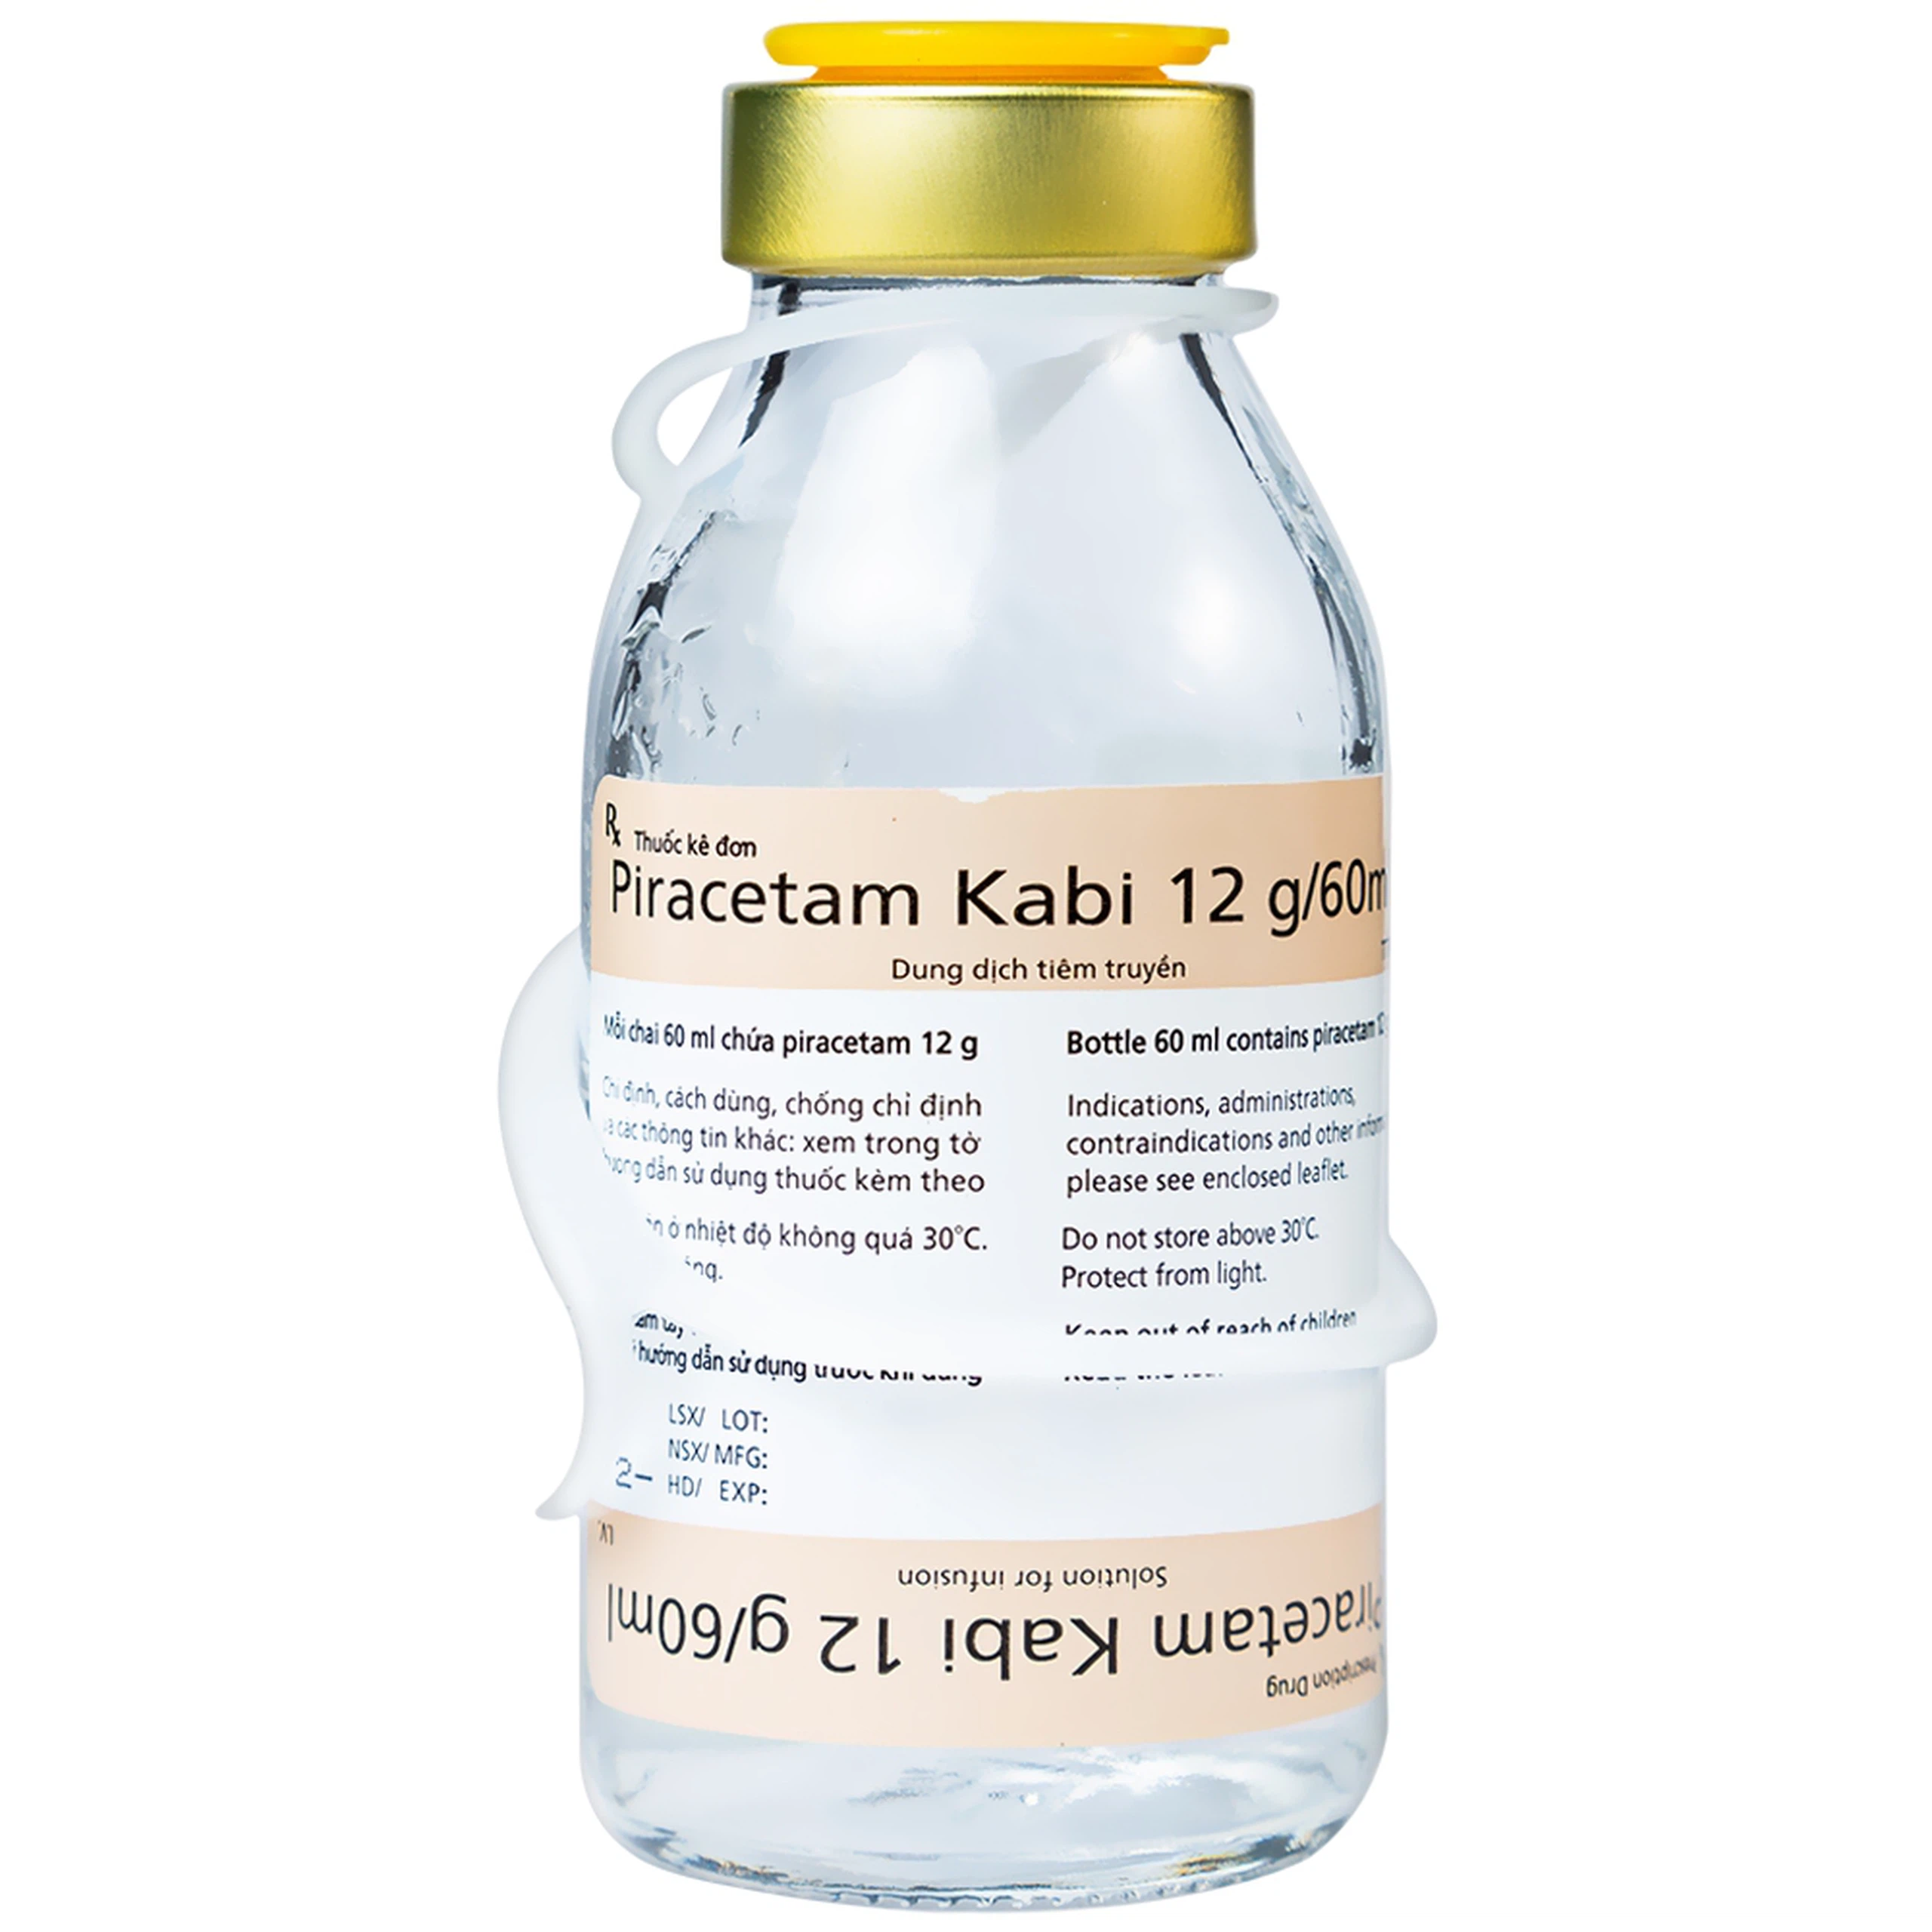 Dịch truyền Piracetam Kabi 12g/60ml Fresenius Kabi điều trị triệu chứng chóng mặt (60ml)